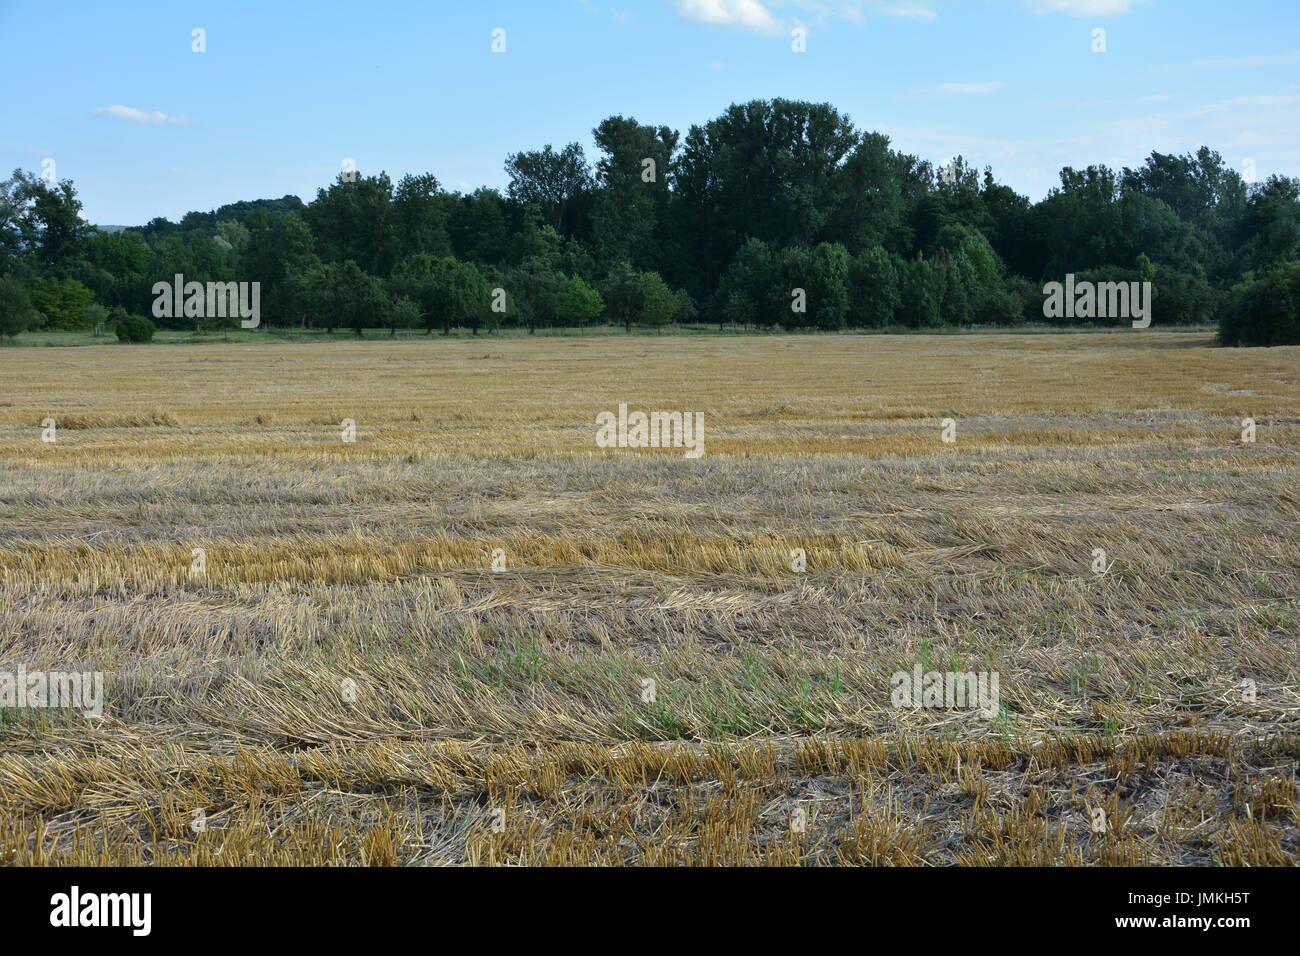 Müsli stoppeln Feld im Vordergrund, und Bäume im Hintergrund Stockfoto